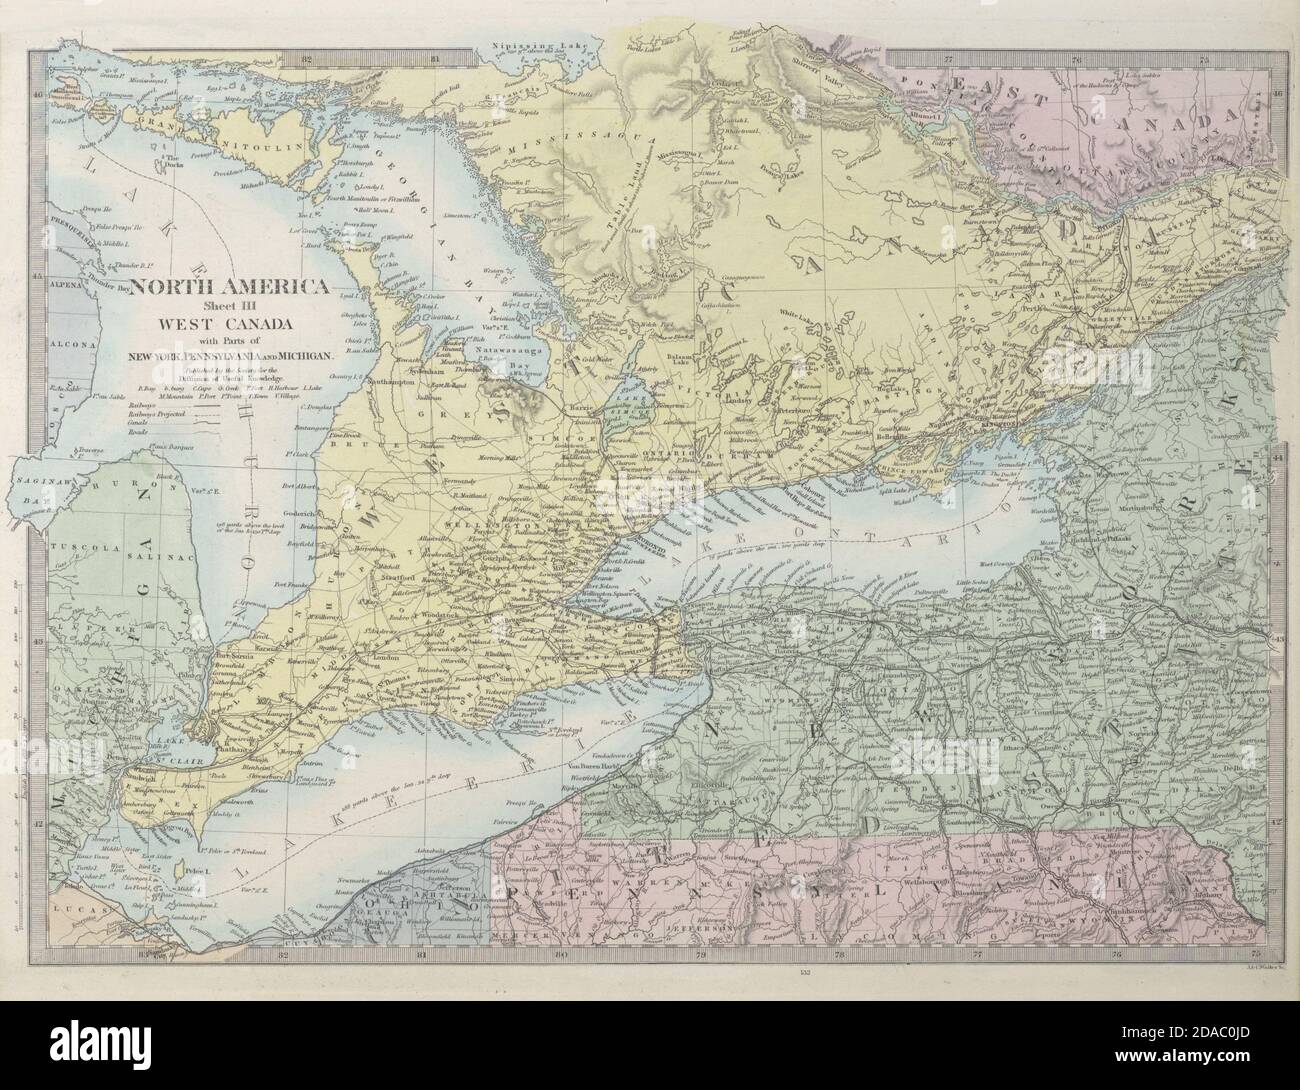 GREAT LAKES Huron Erie Ontario. Upstate New York. Railways. SDUK 1857 old map Stock Photo